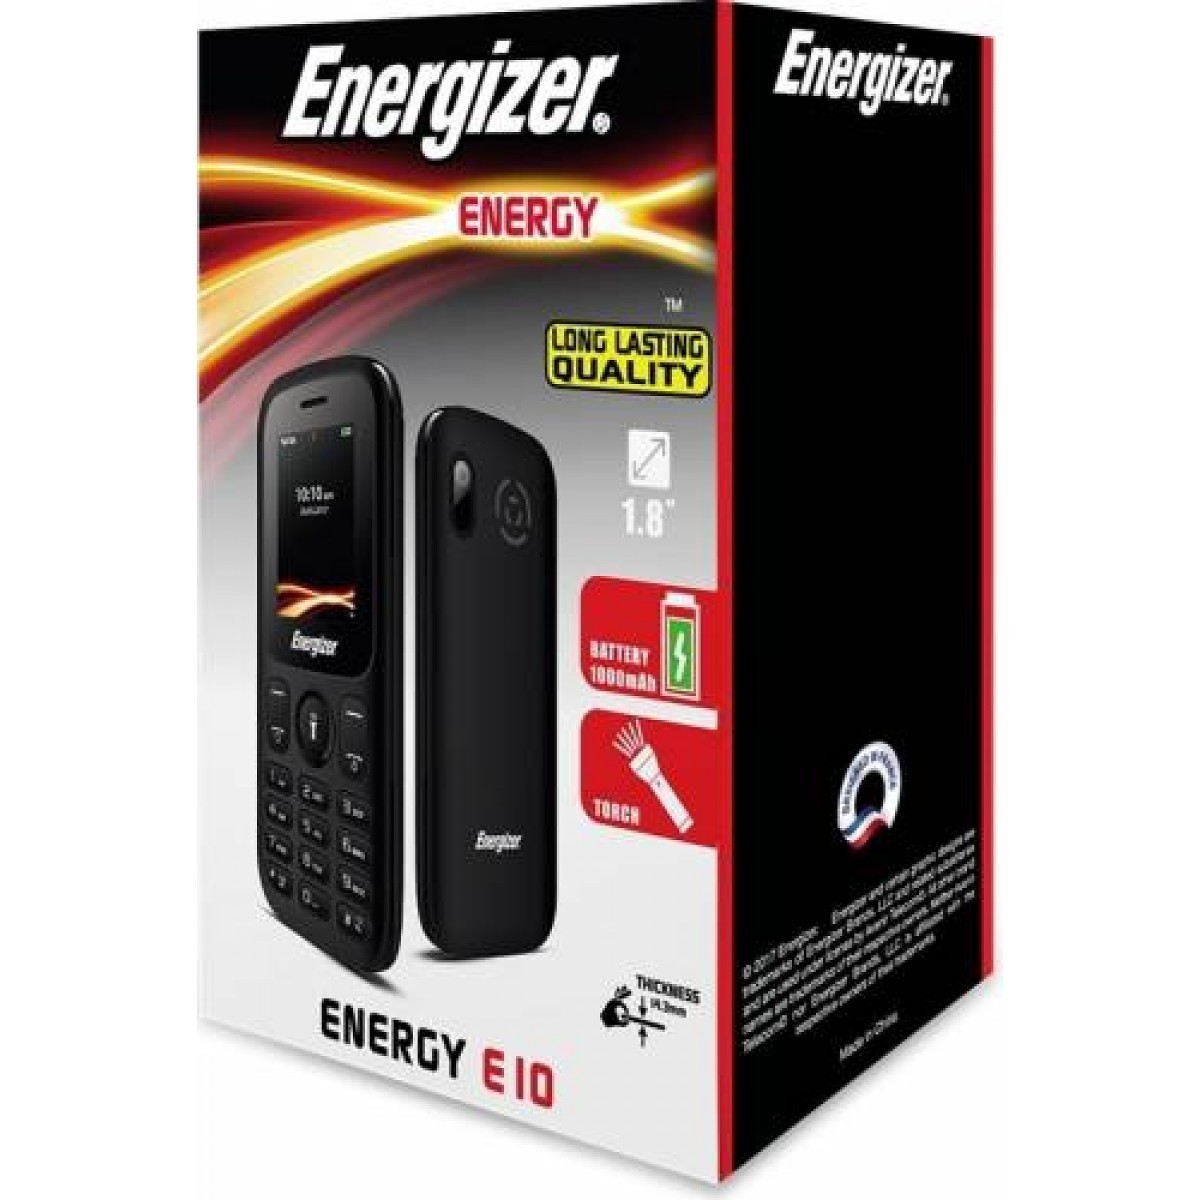 Energizer Energy E10